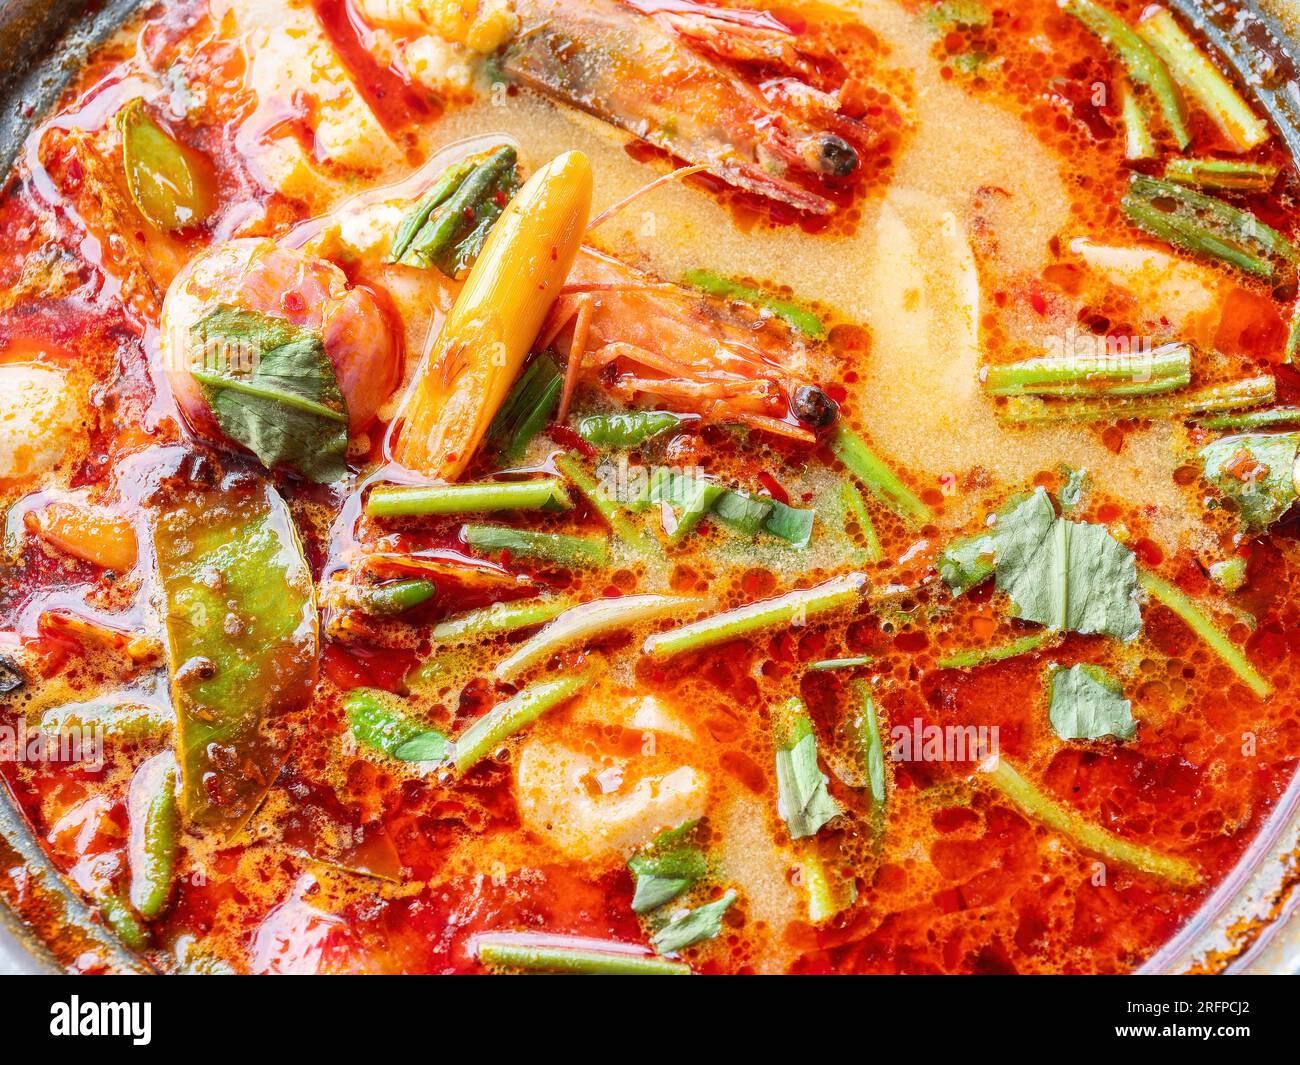 La famosa zuppa tailandese, tom yam kung, una zuppa calda e acida con gamberoni ed erbe, popolare tra i turisti in Thailandia e tra i thailandesi. Foto Stock